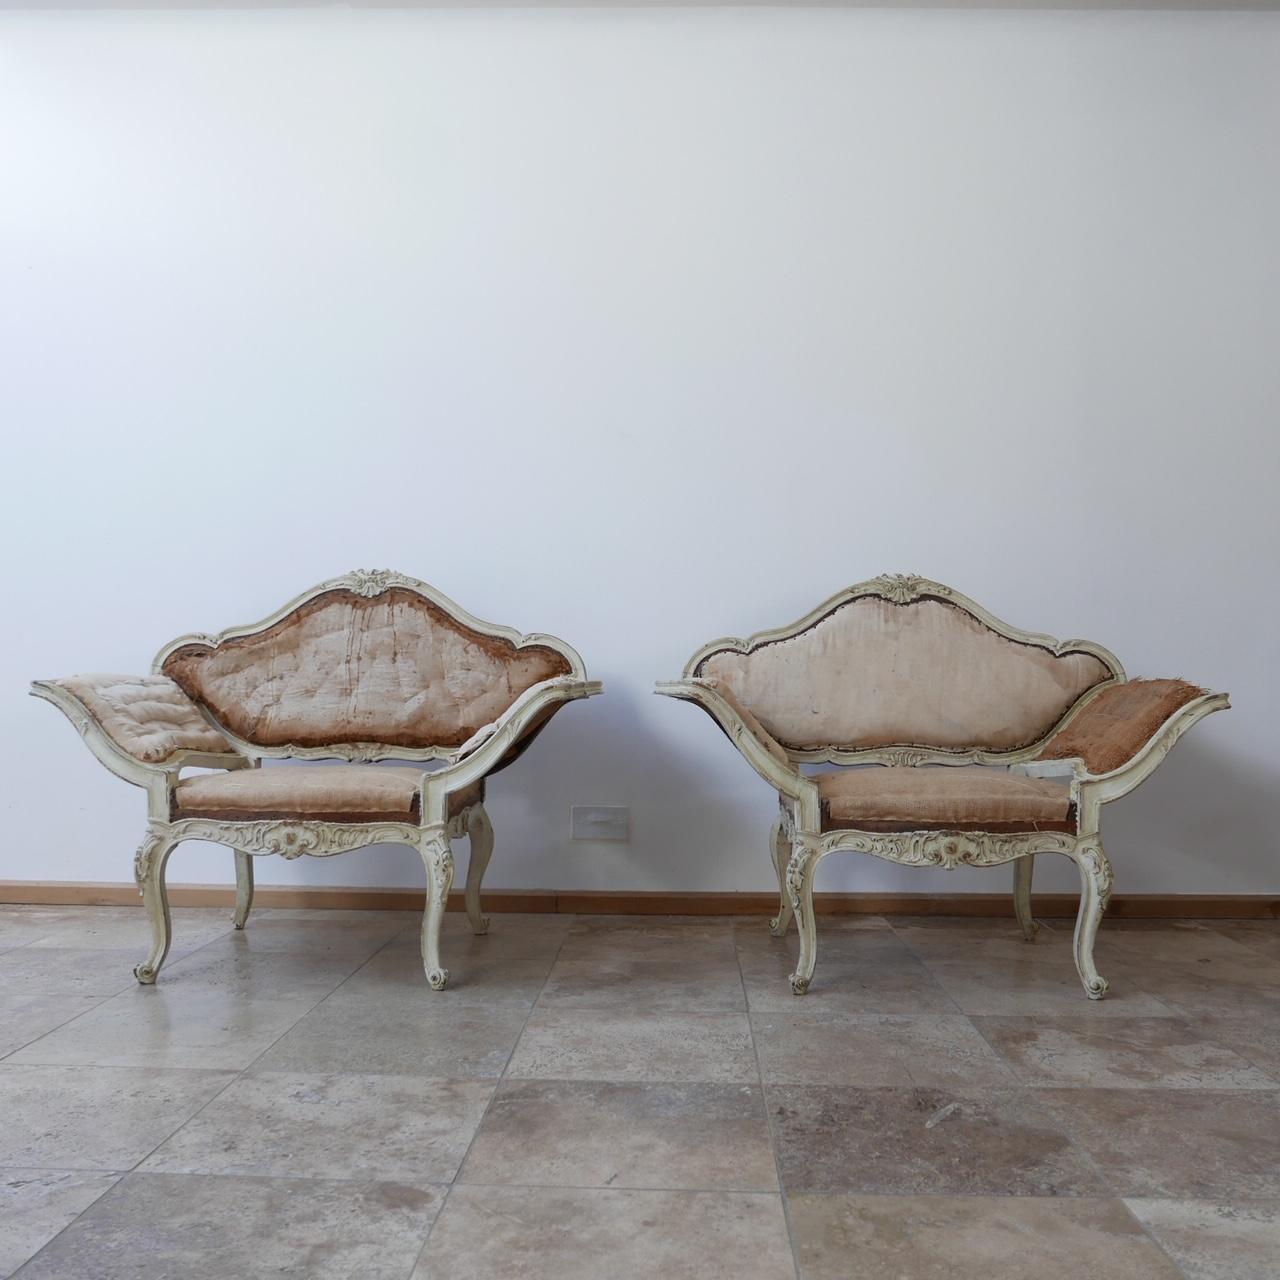 Ein Paar französische Sessel um 1840.

Abgezogener Rücken, bereit zum Aufpolstern.

Weit geöffnete, gespreizte Armlehnen in einer seltenen und ungewöhnlichen Form, die zum Hinsetzen einlädt.

Totale Eleganz.

Abmessungen: 120 B x 60 T x 40